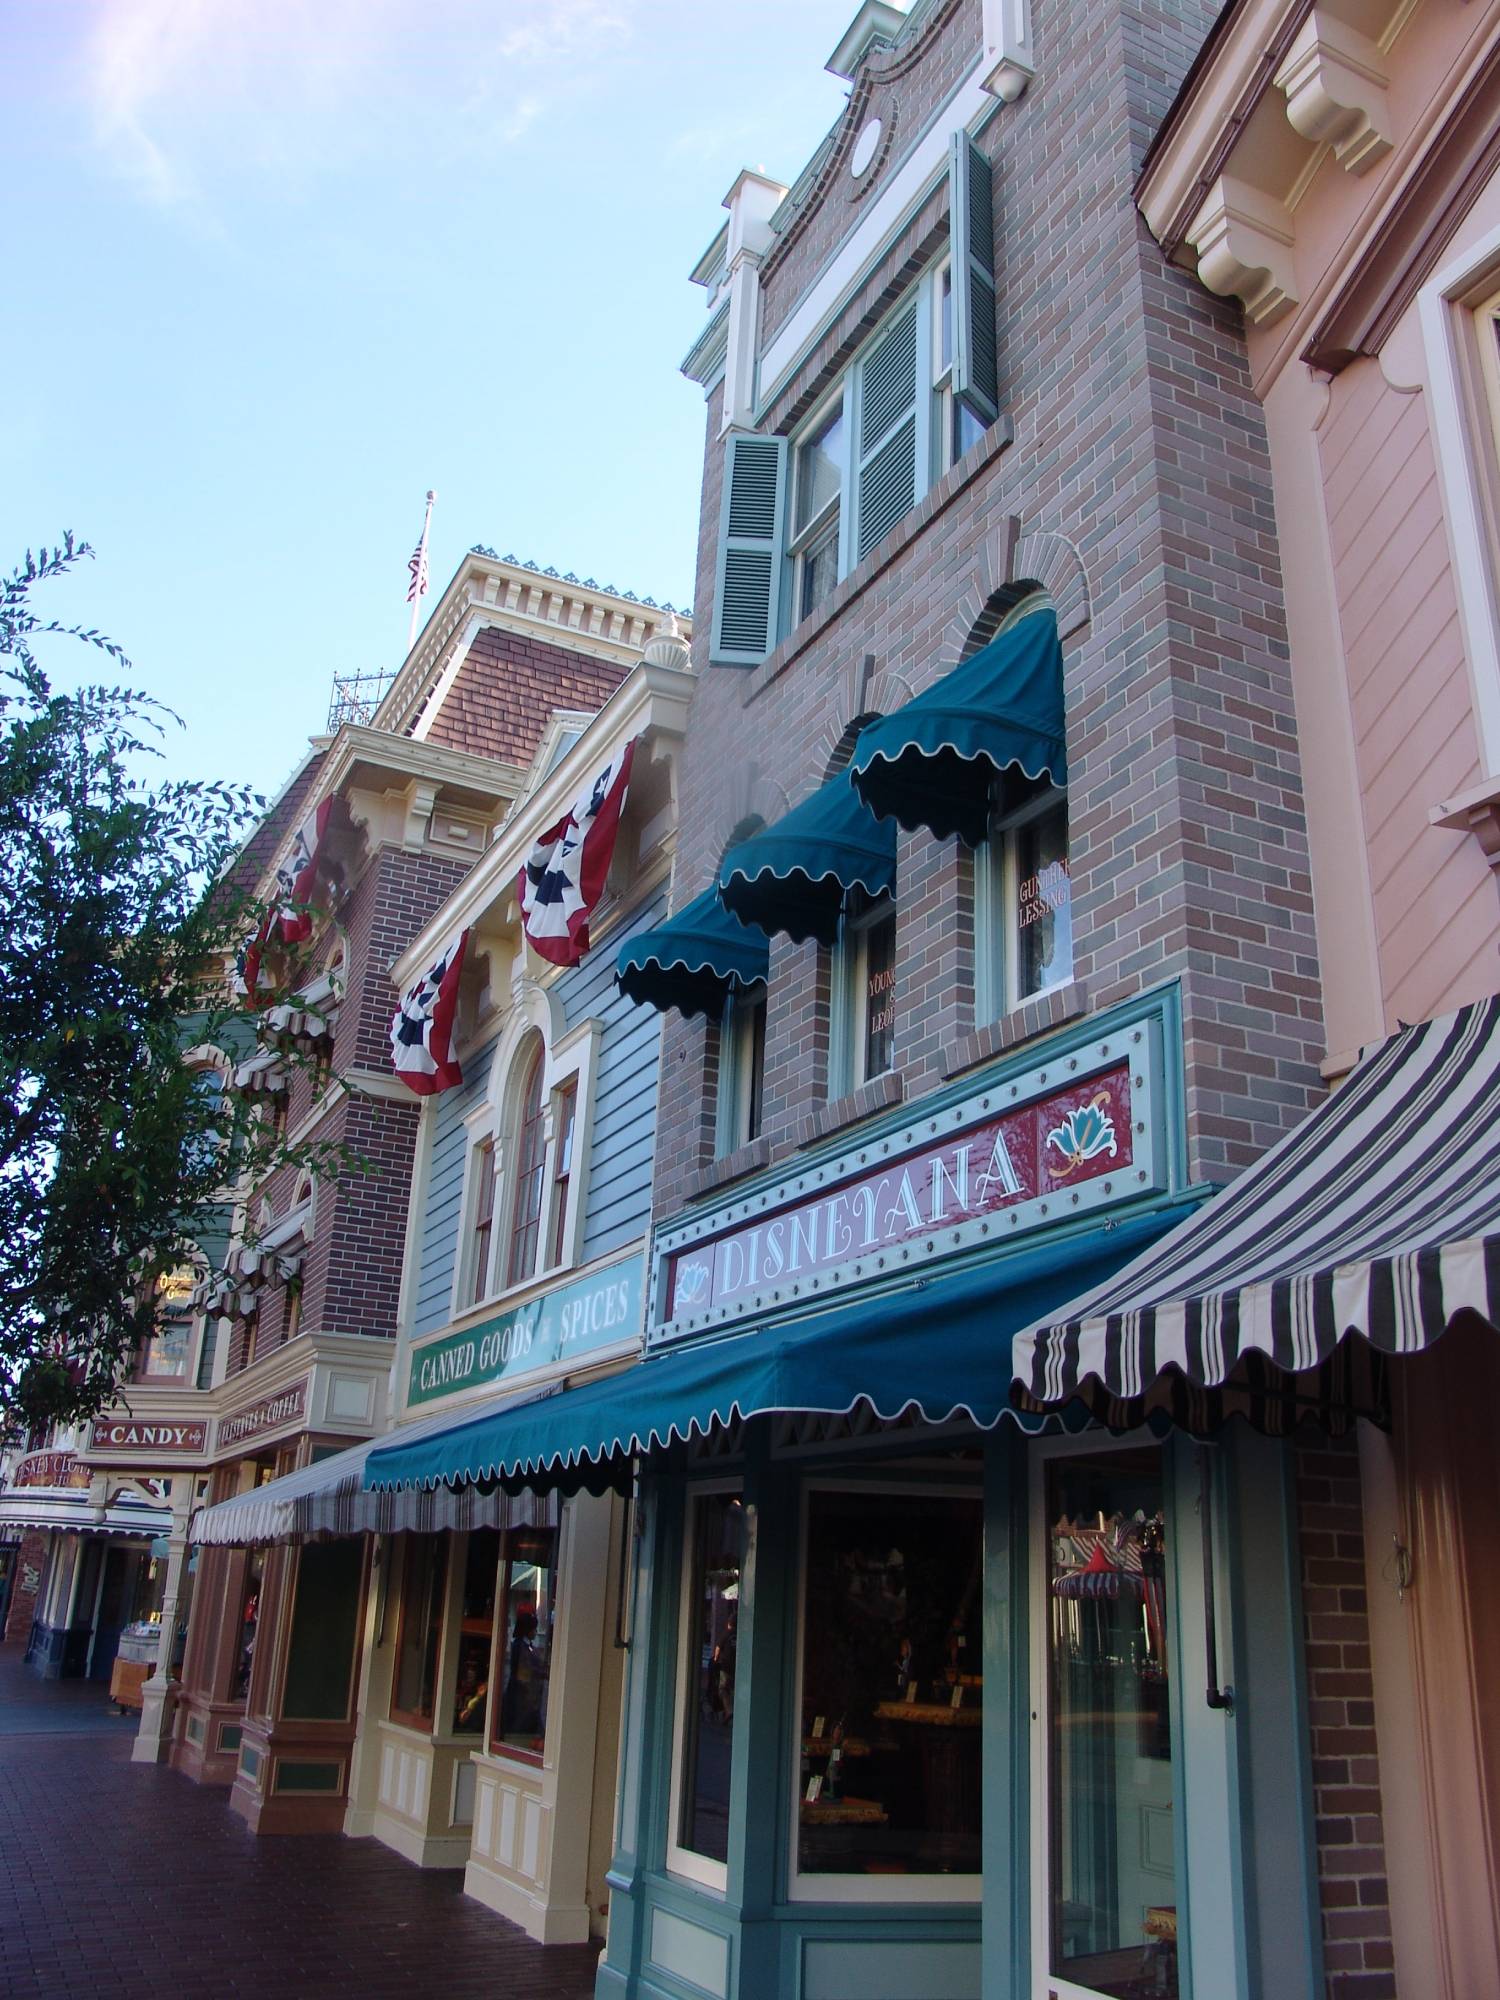 Disneyland Park - Main Street USA shops